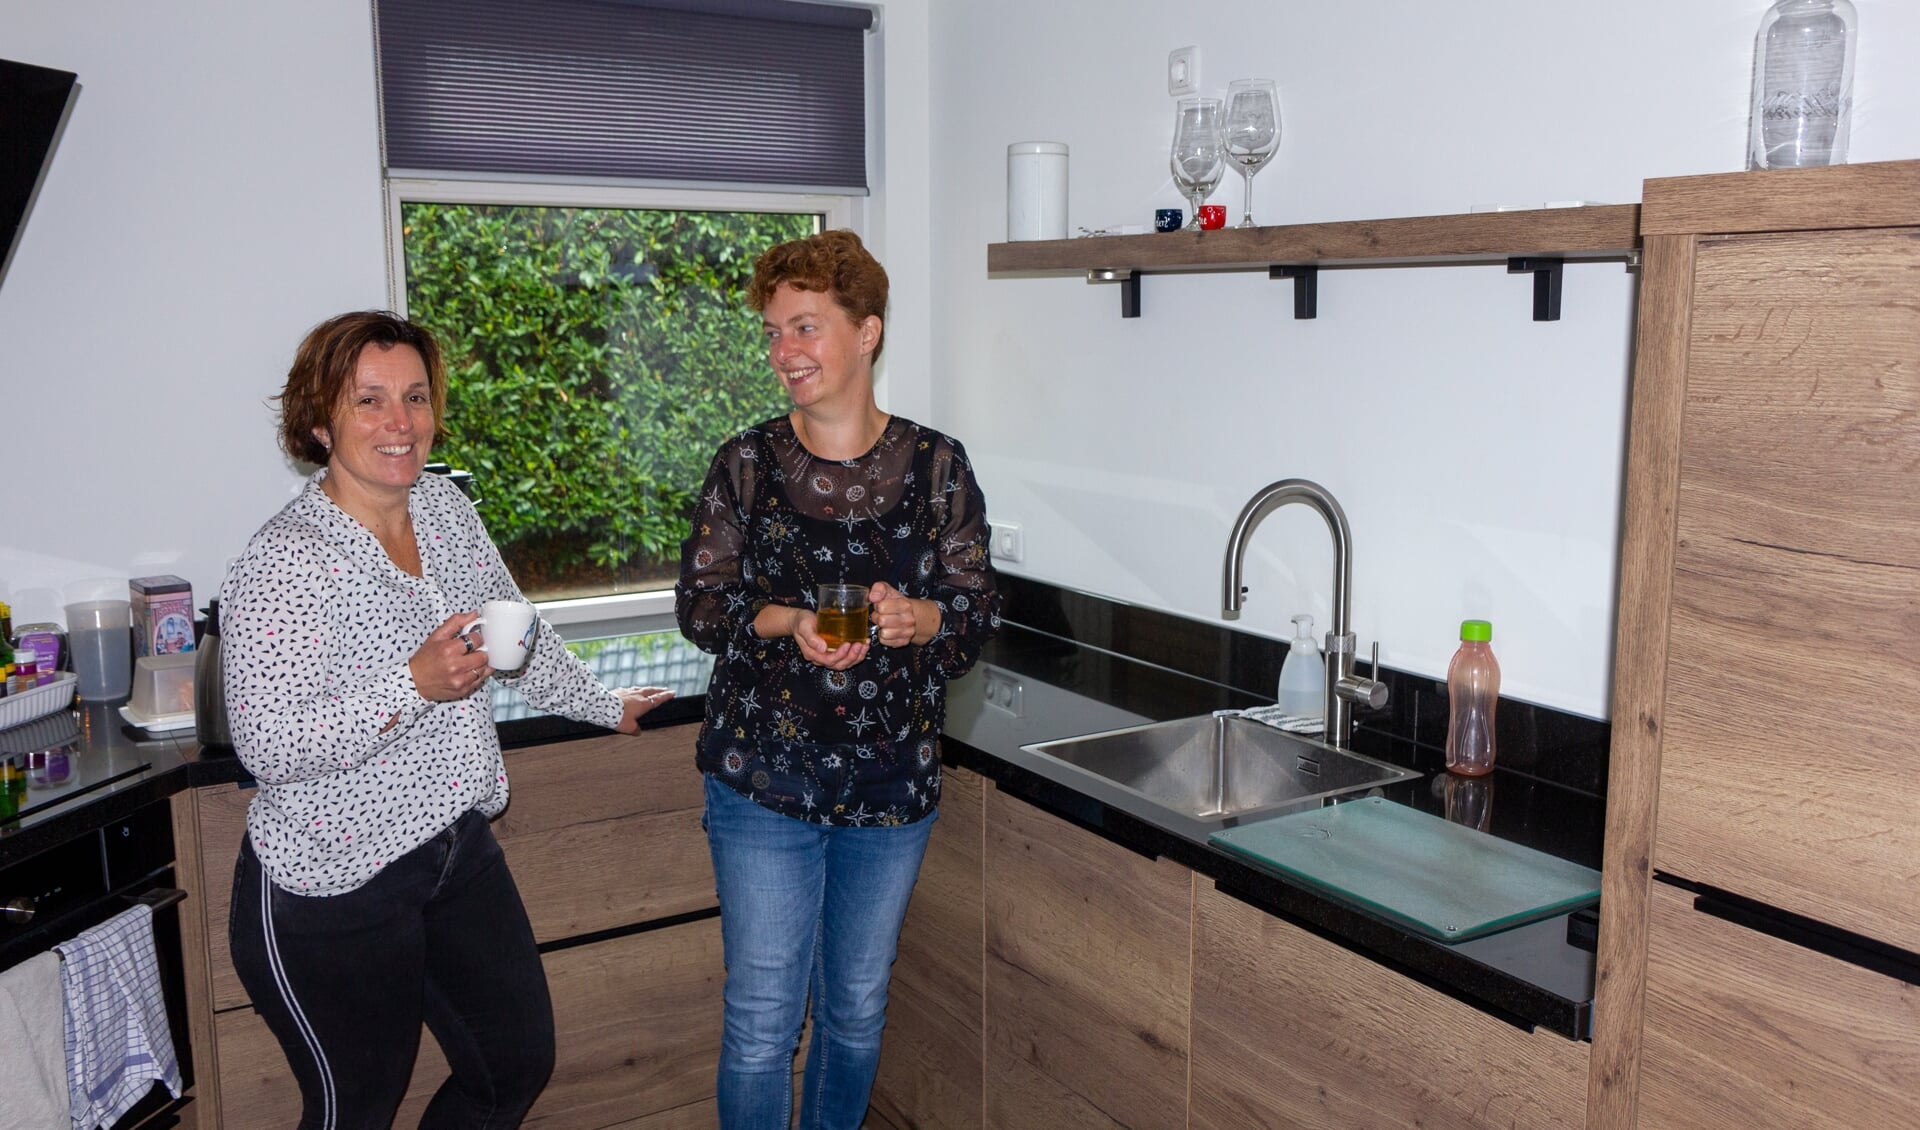 Iepie Zijlstra en Joke Veenema in de nieuwe keuken van de familie Zijlstra. De kraan blijft glanzend door het kalkvrije water.  